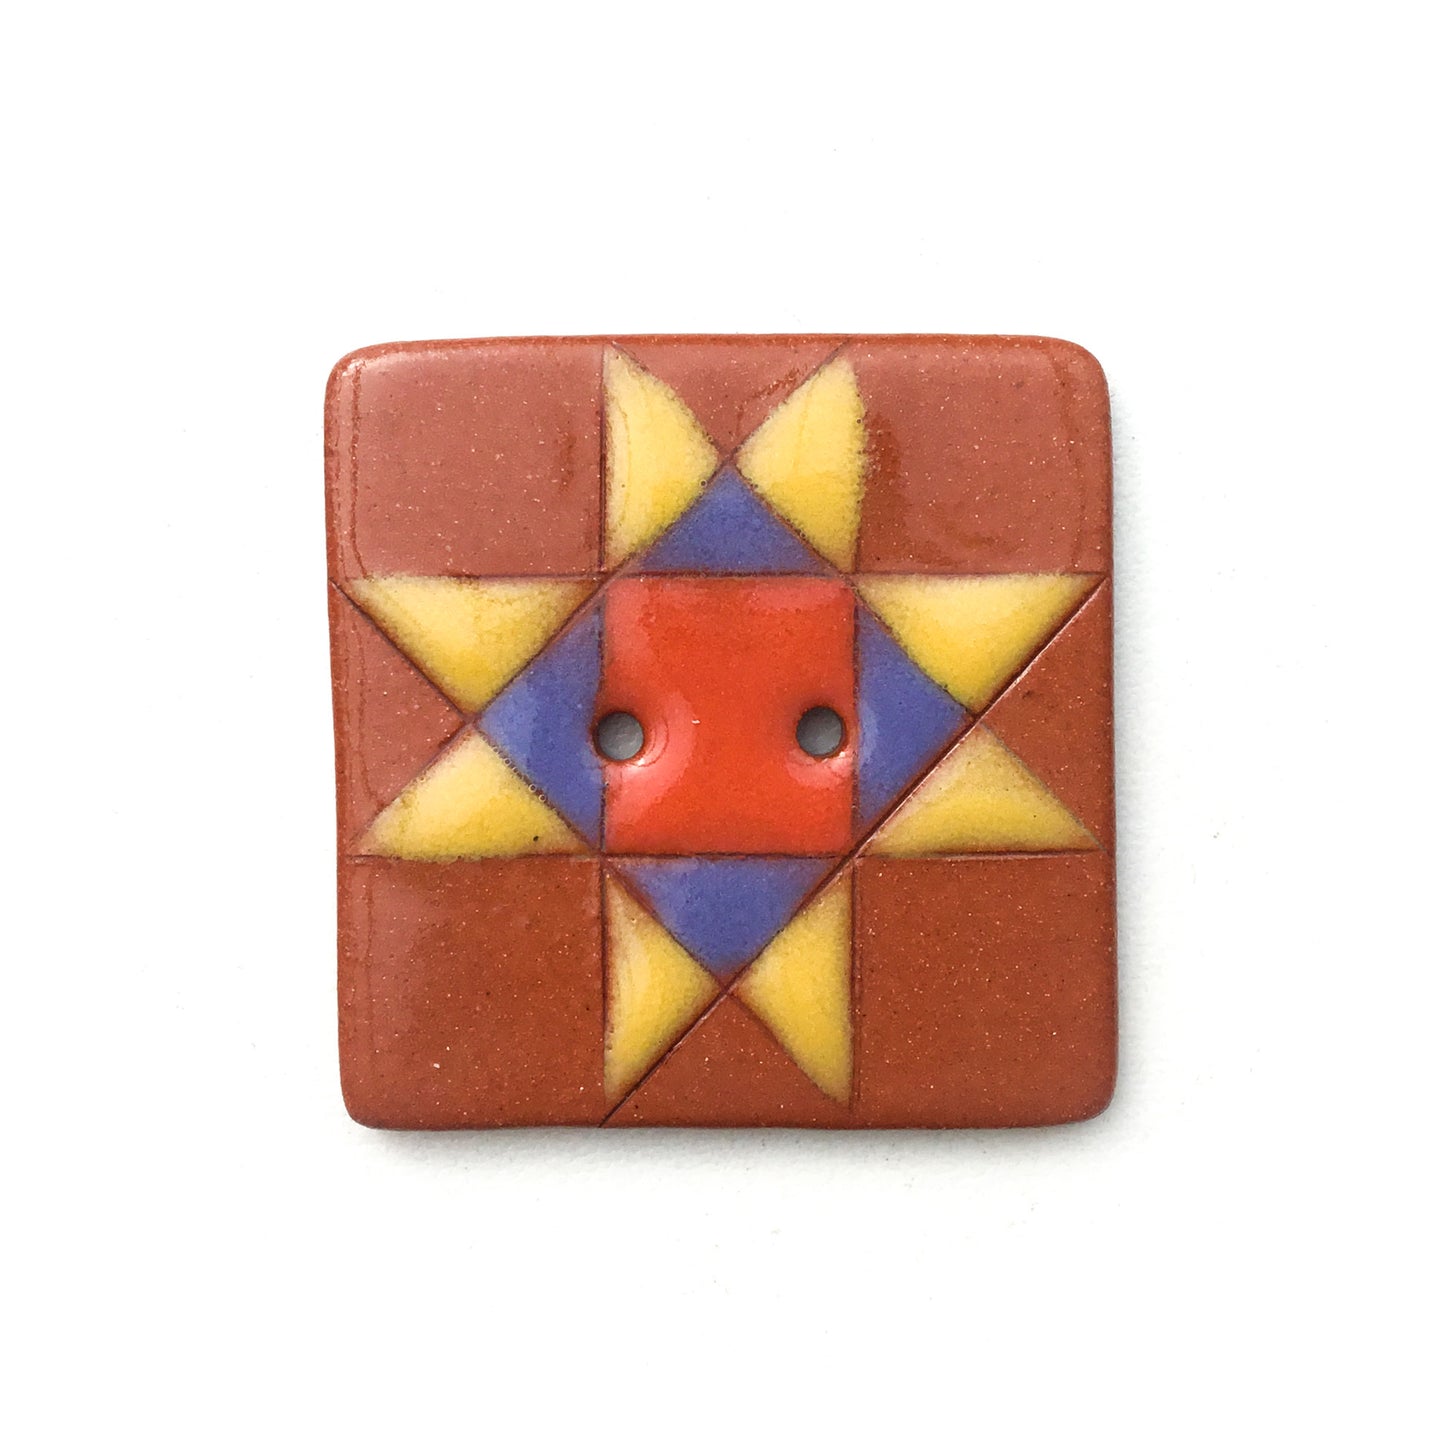 Ohio Star Ceramic Quilt Block Buttons- 1 3/8"